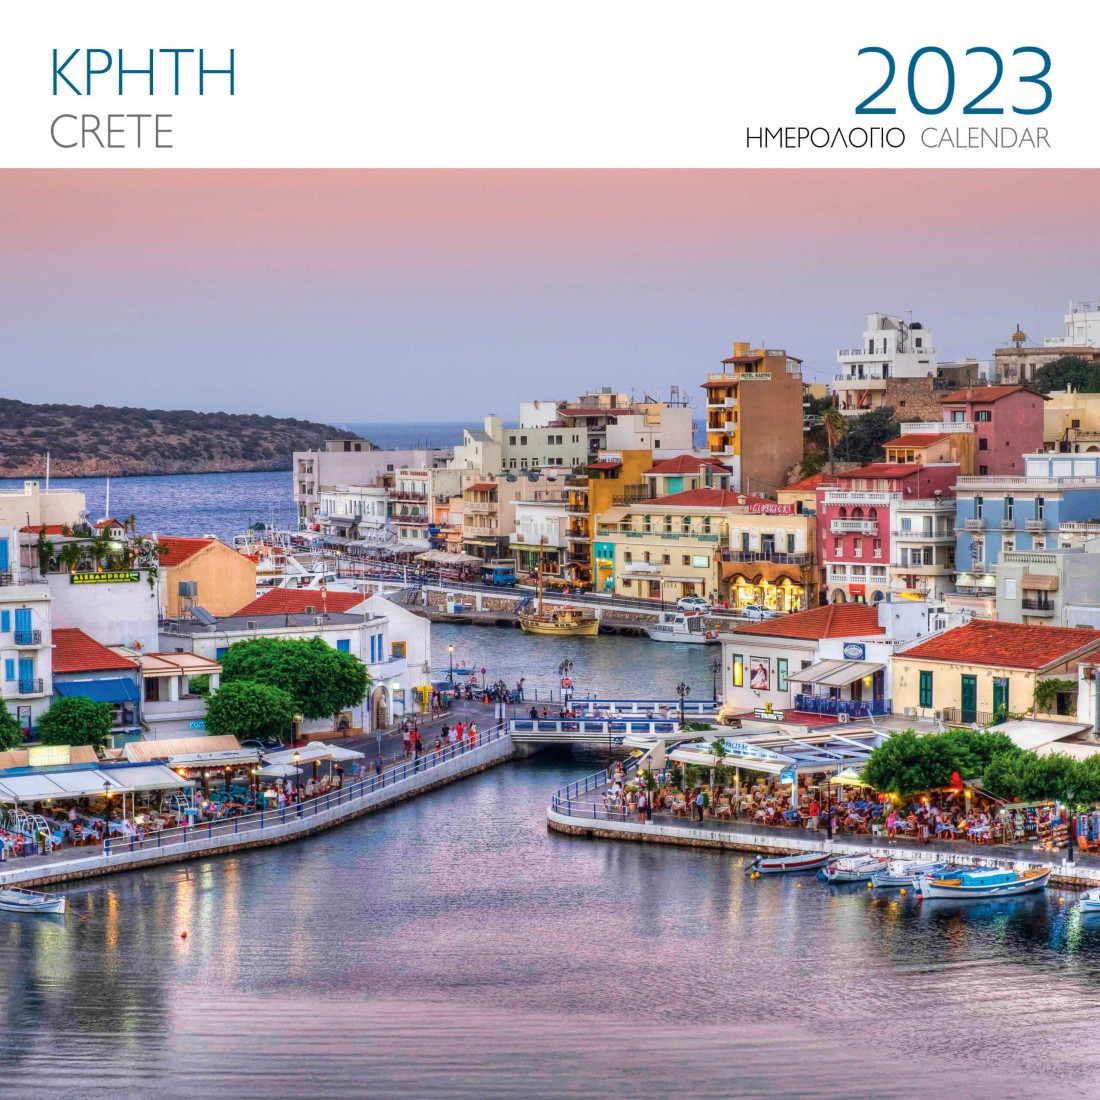 Μίλητος, Ημερολόγιο 2023, Επιτοίχιο, Ελλάδα, Κρήτη